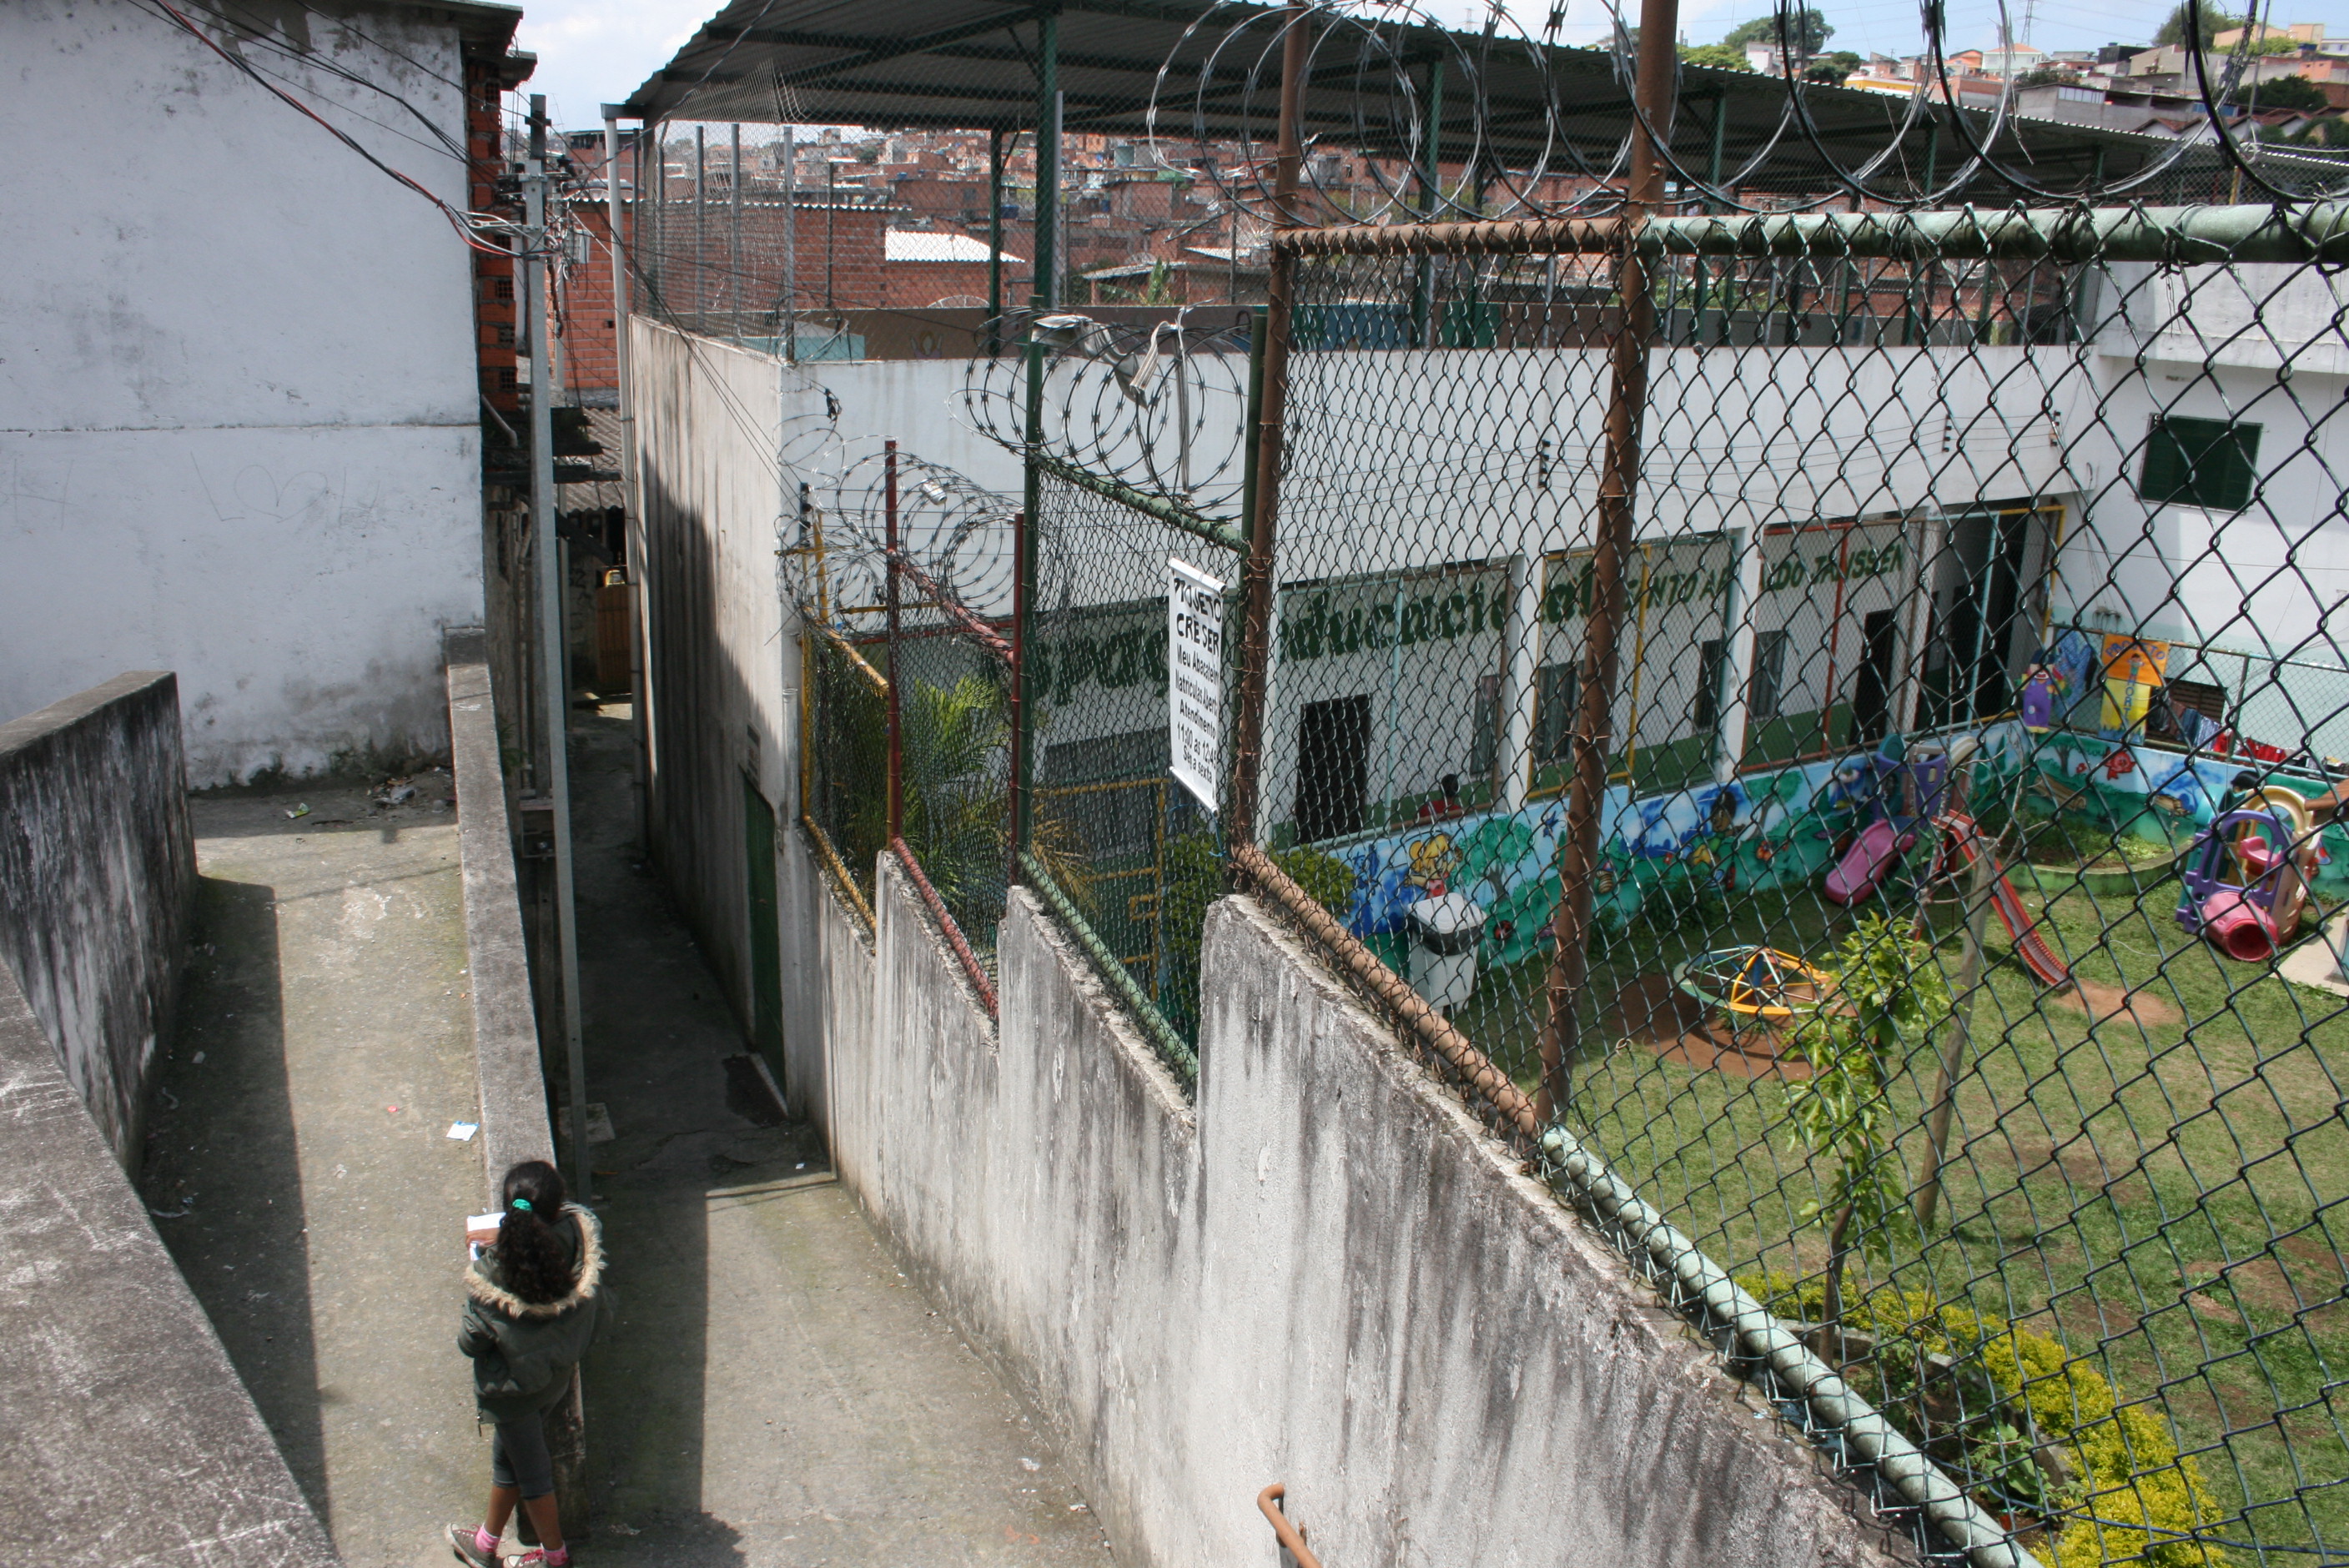 Imagem mostra um gramado com brinquedos infantis de um centro educacional à direita, com uma criança encostada em uma mureta ao centro da imagem, do lado de fora do centro educacional